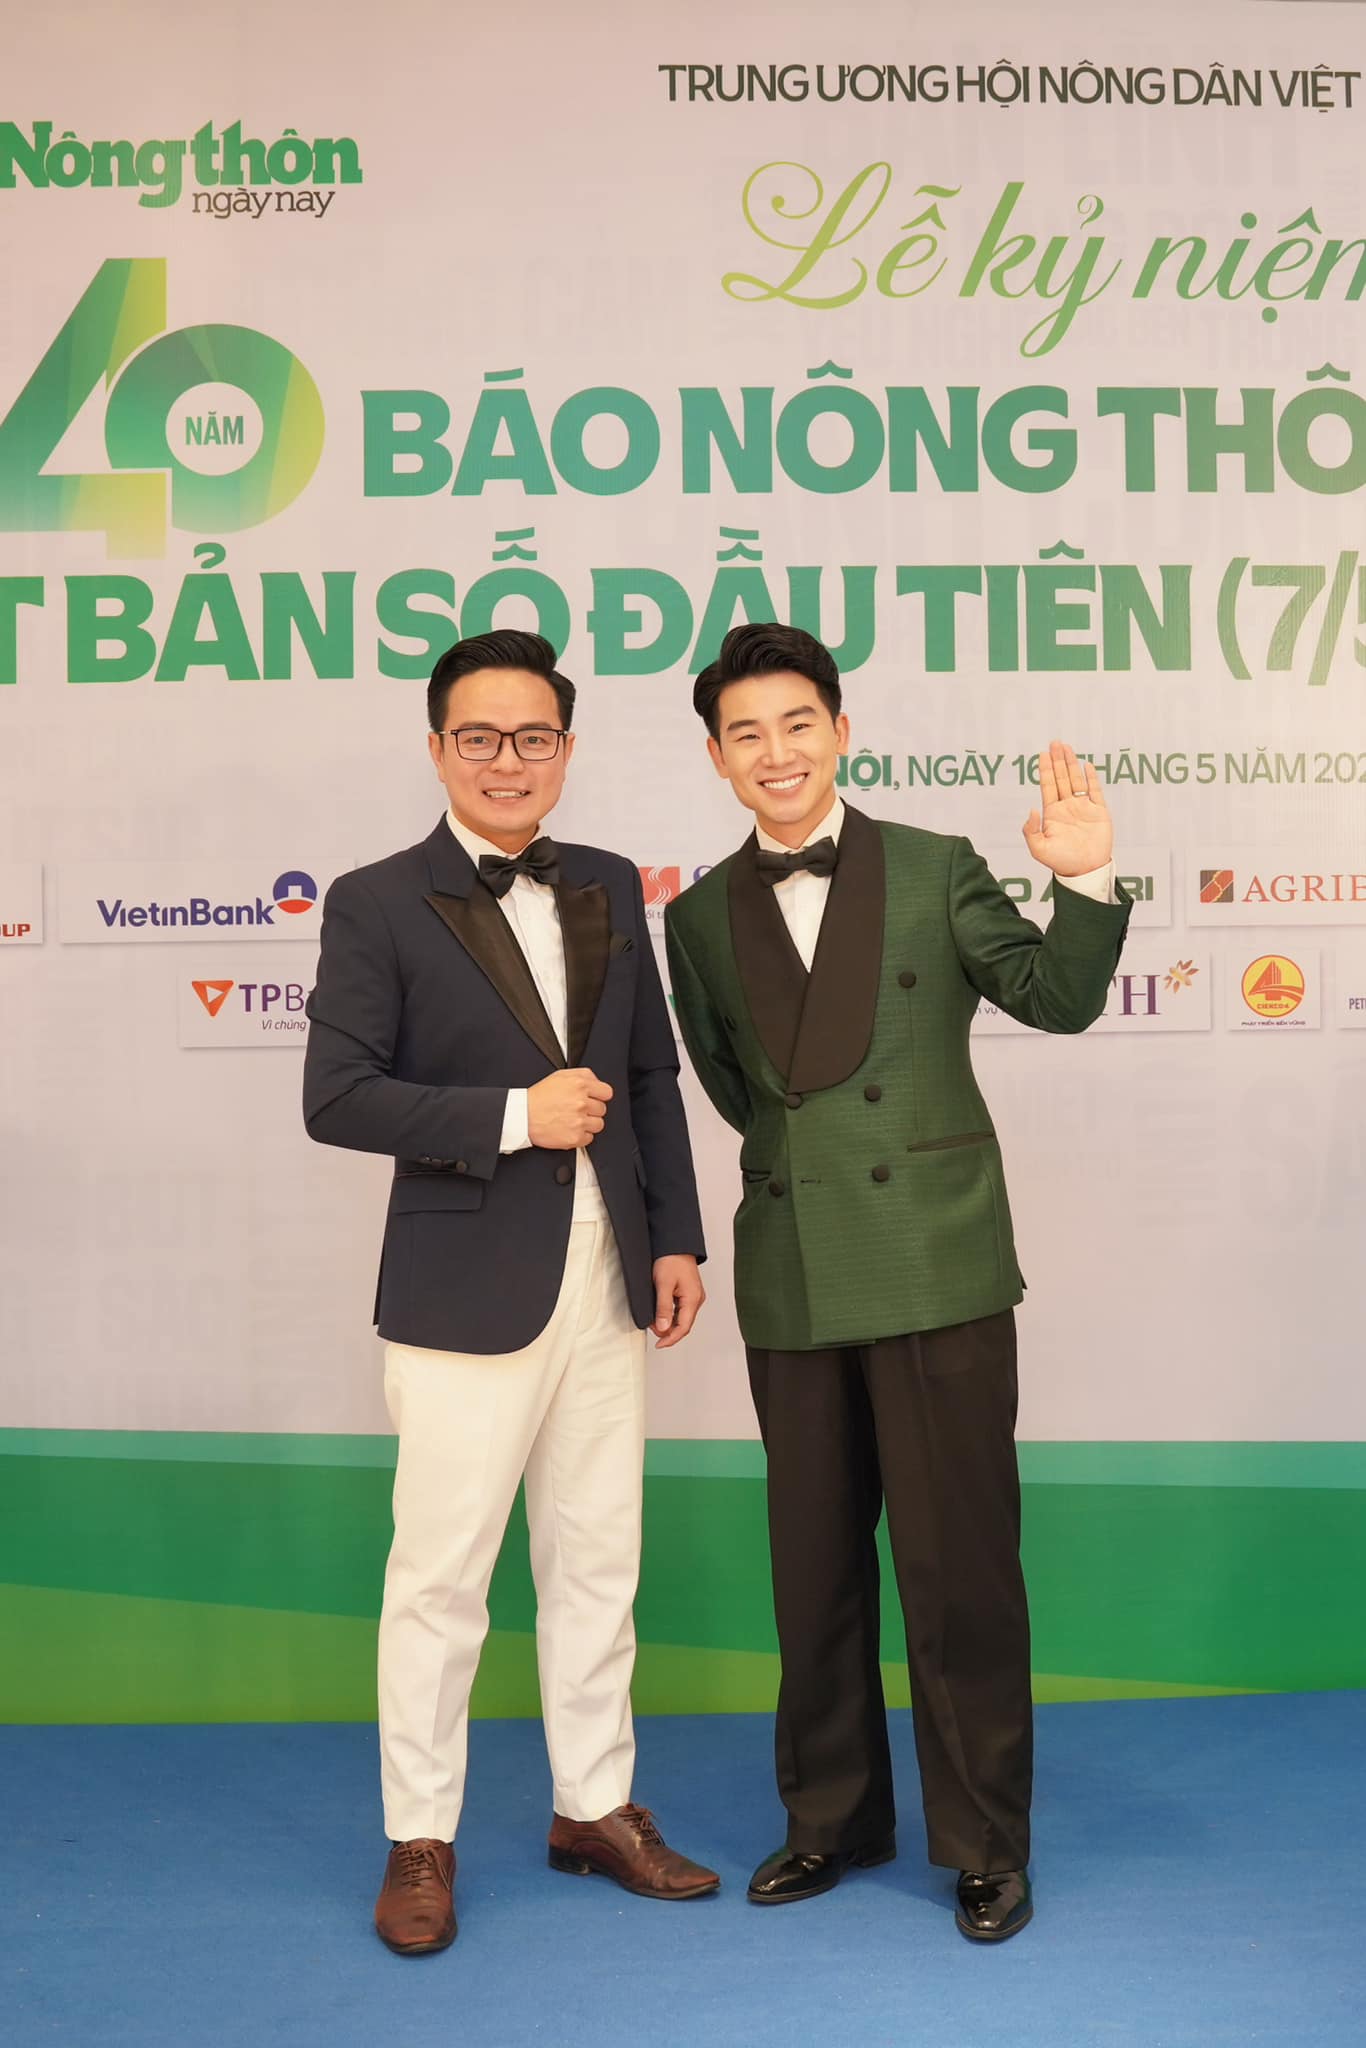 Ca sĩ Tuấn Dương gây ấn tượng mạnh với ca khúc nhạc sĩ Nguyễn Vĩnh Tiến sáng tác tặng báo Nông thôn Ngày nay- Ảnh 2.